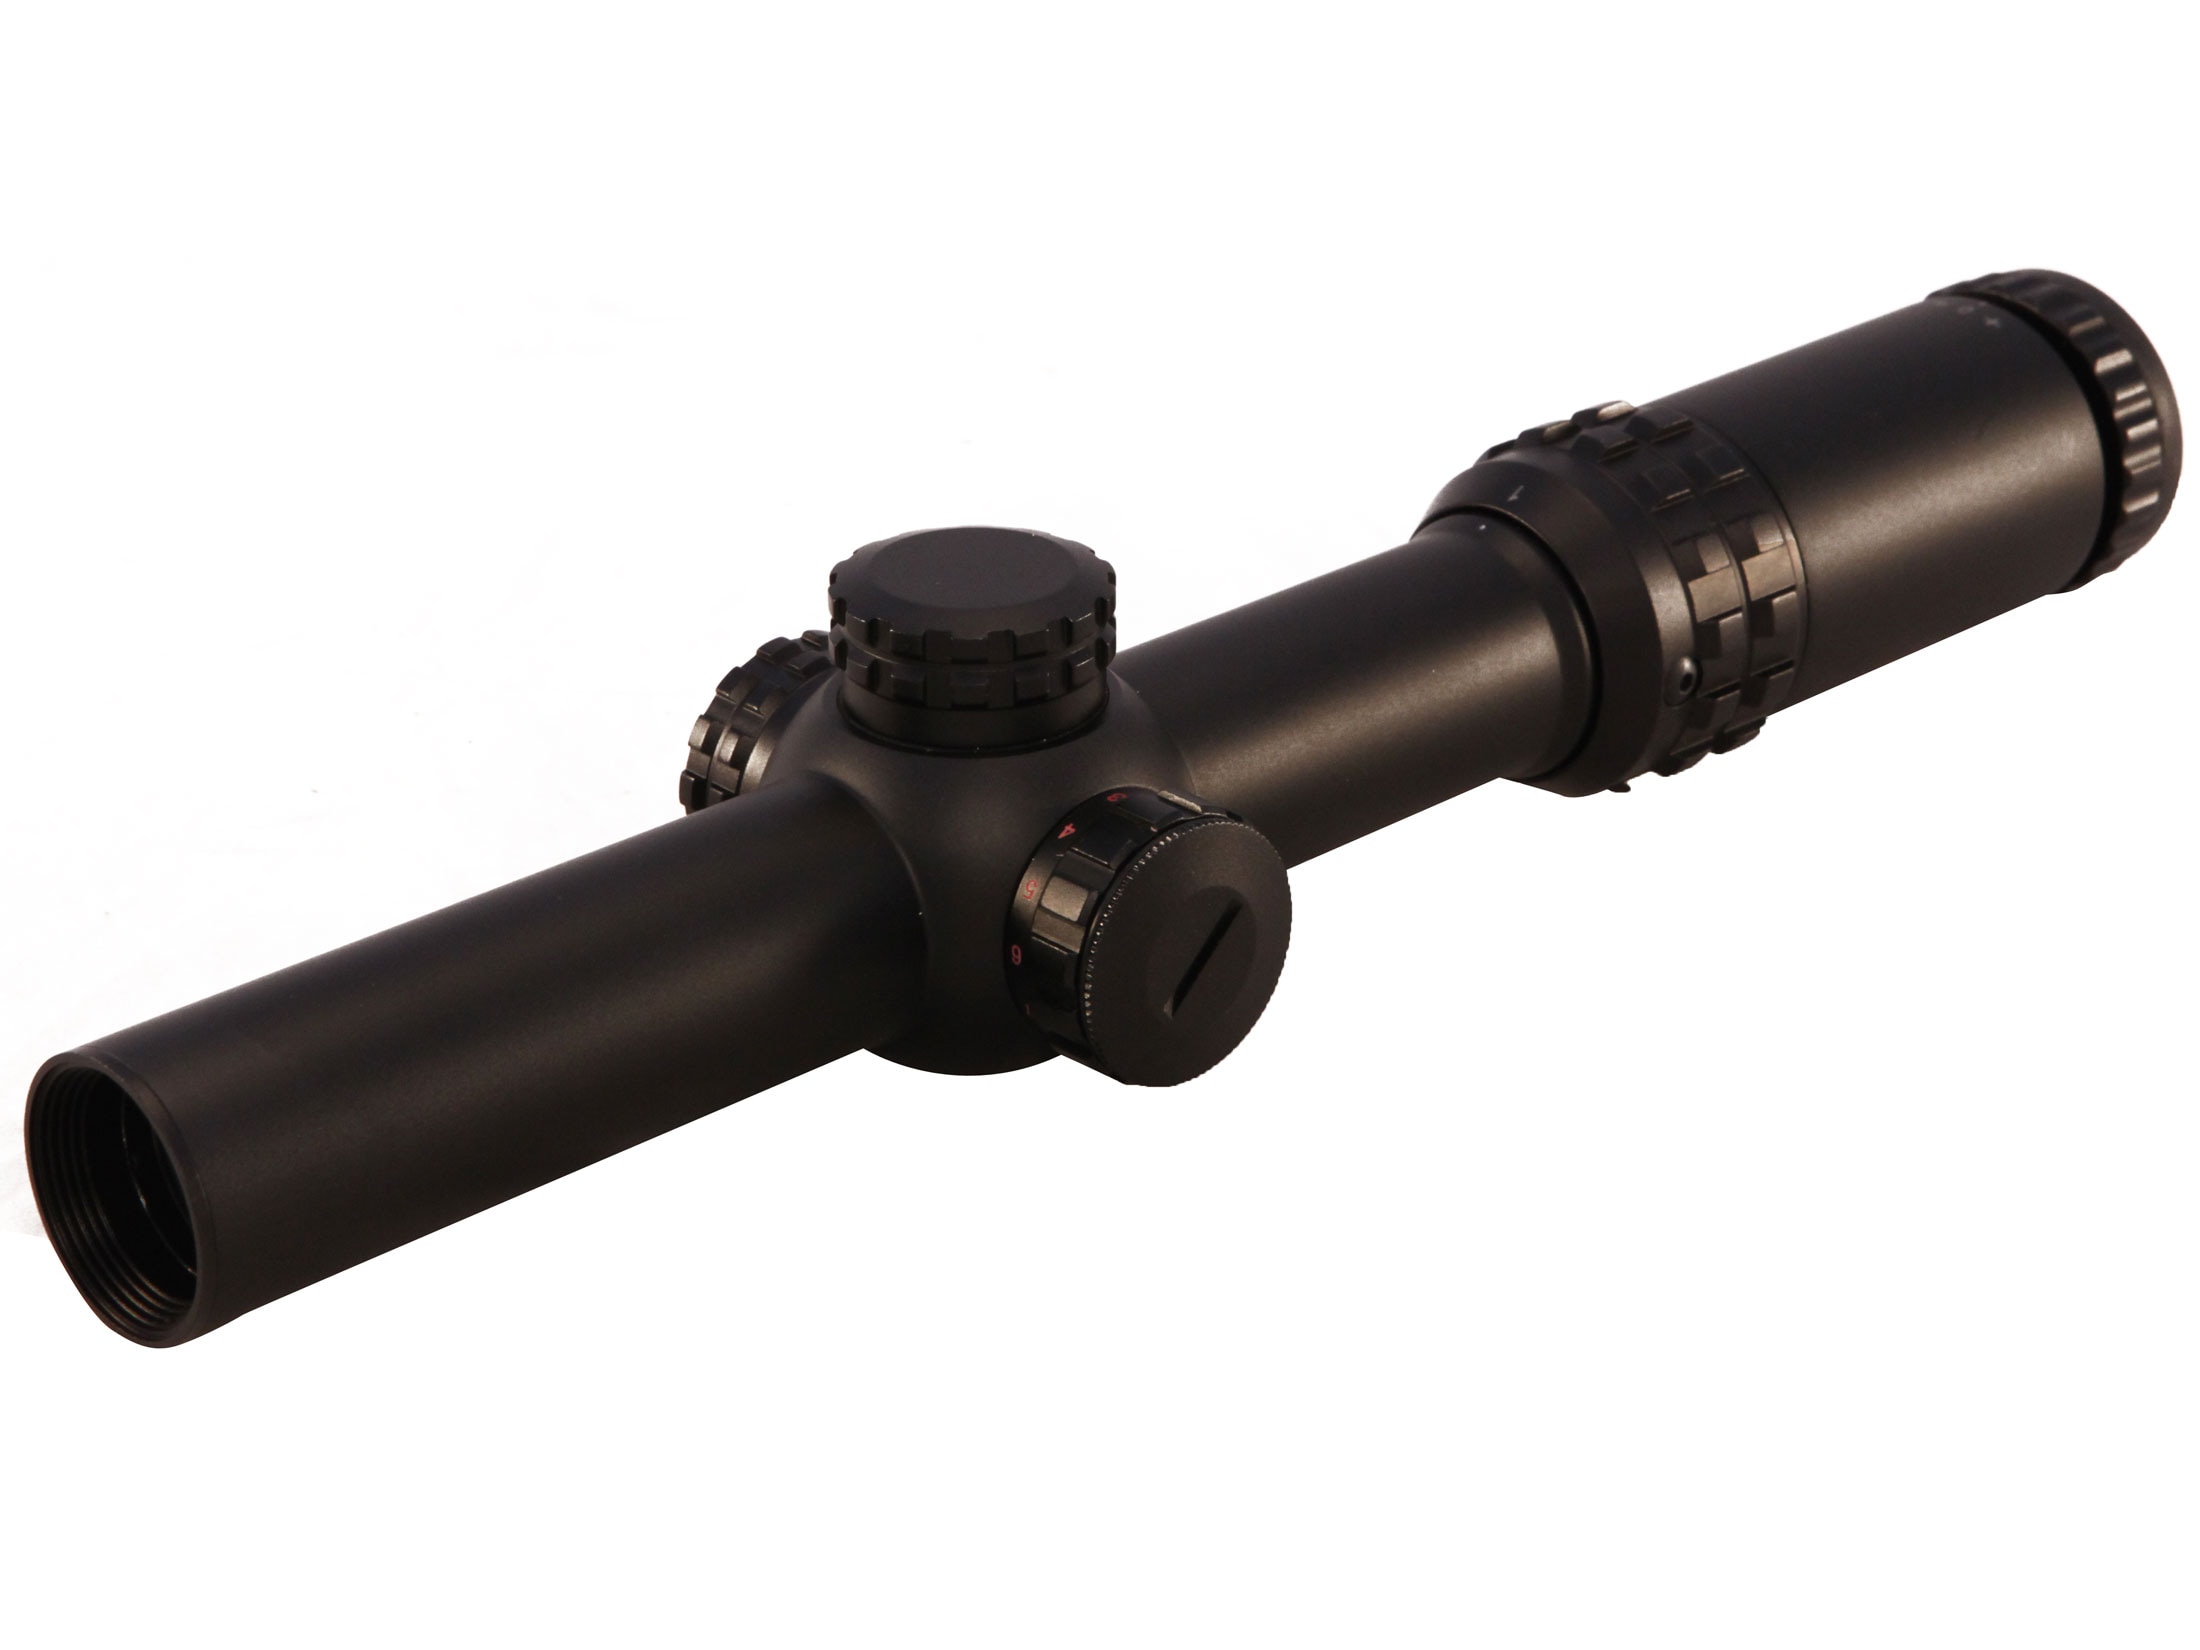 Millett Dms 1 30mm Tube Rifle Scope 1 4x 24mm Illuminated Donut Dot